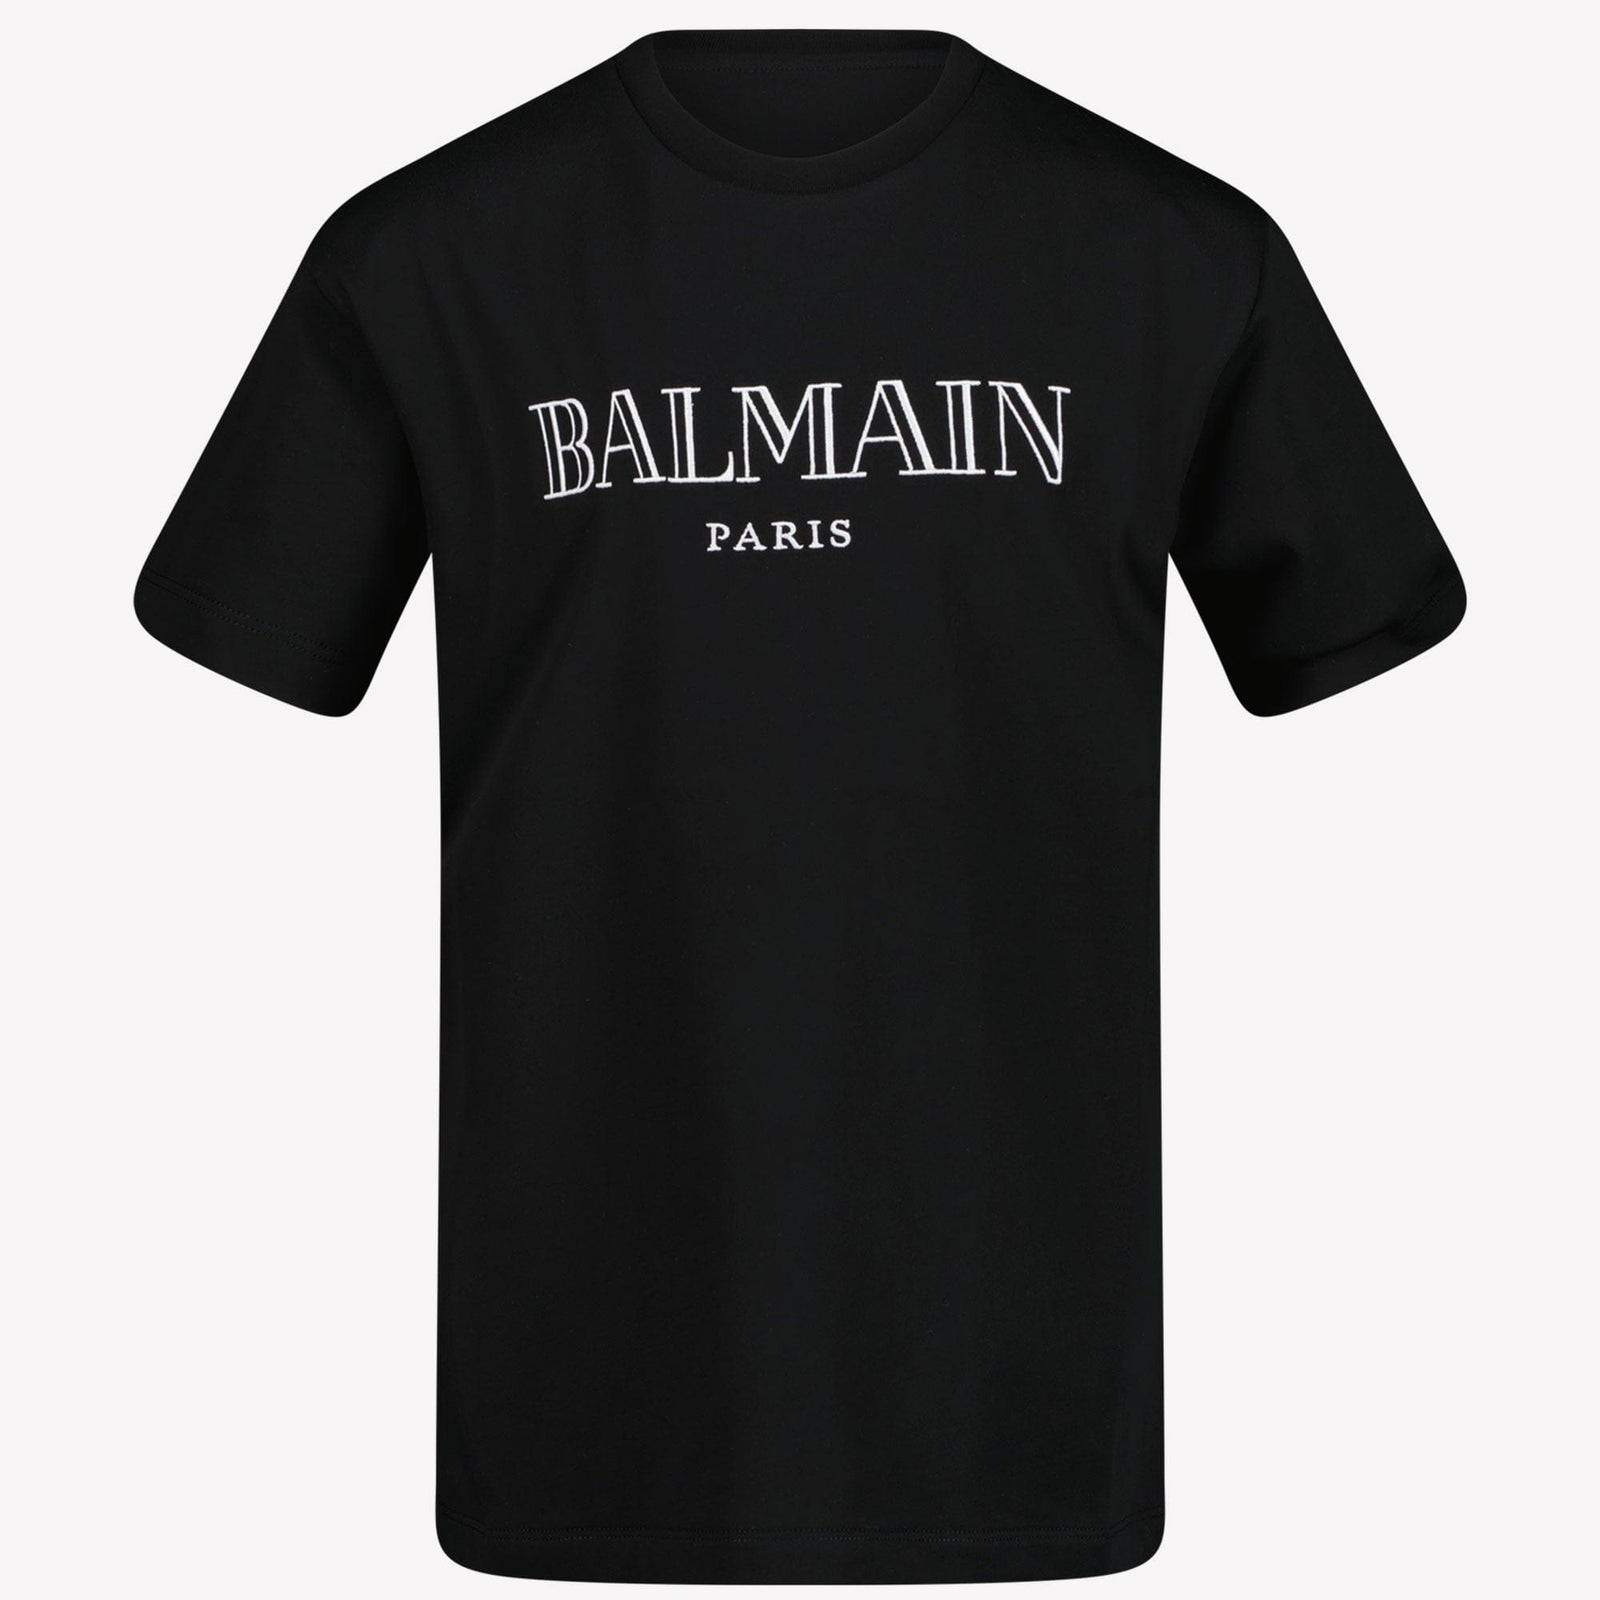 Balmain Unisex t-shirt svart